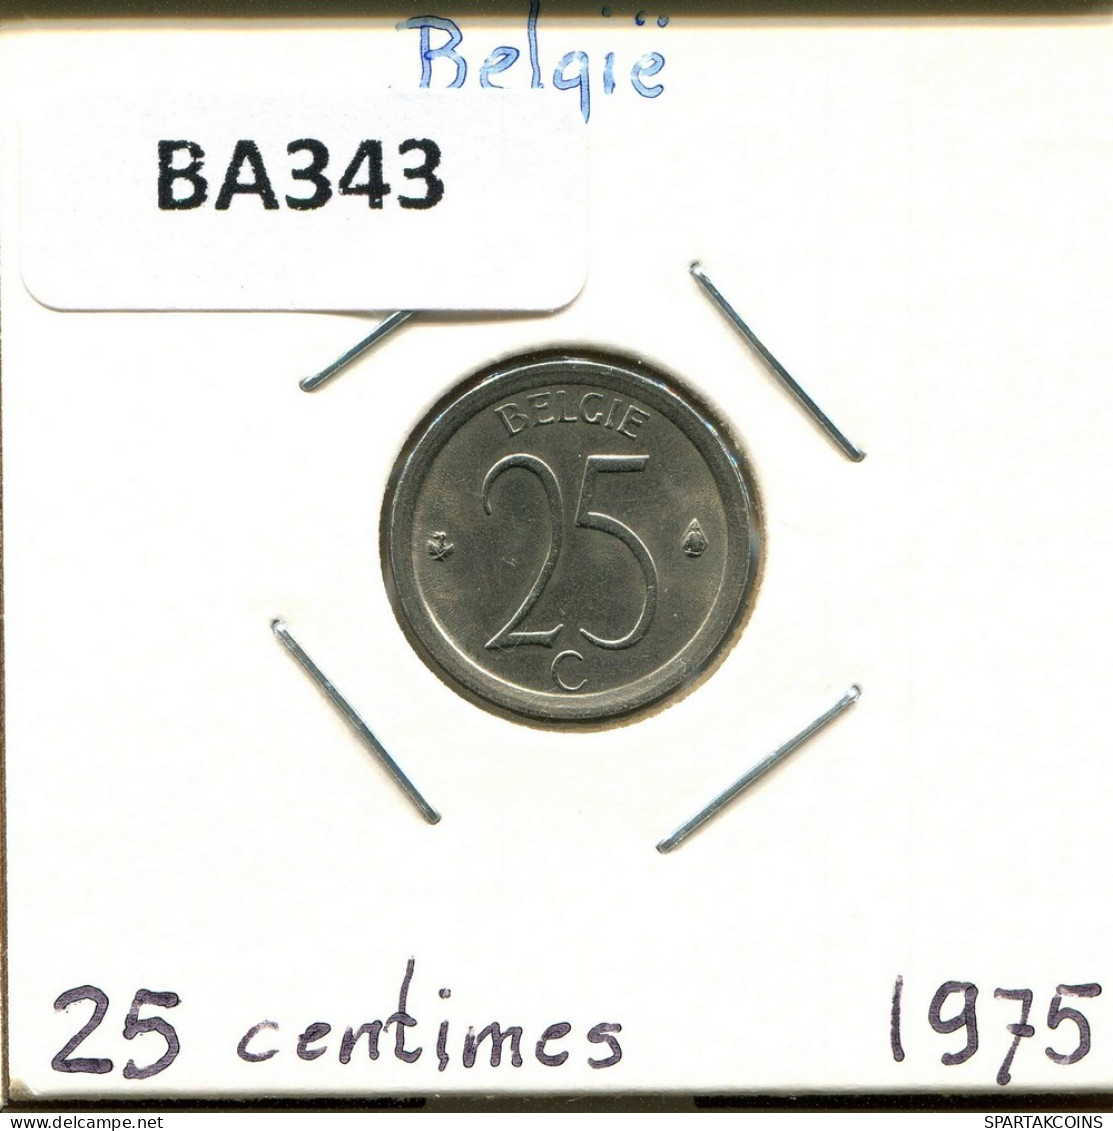 25 CENTIMES 1975 DUTCH Text BELGIQUE BELGIUM Pièce #BA343.F.A - 25 Cents